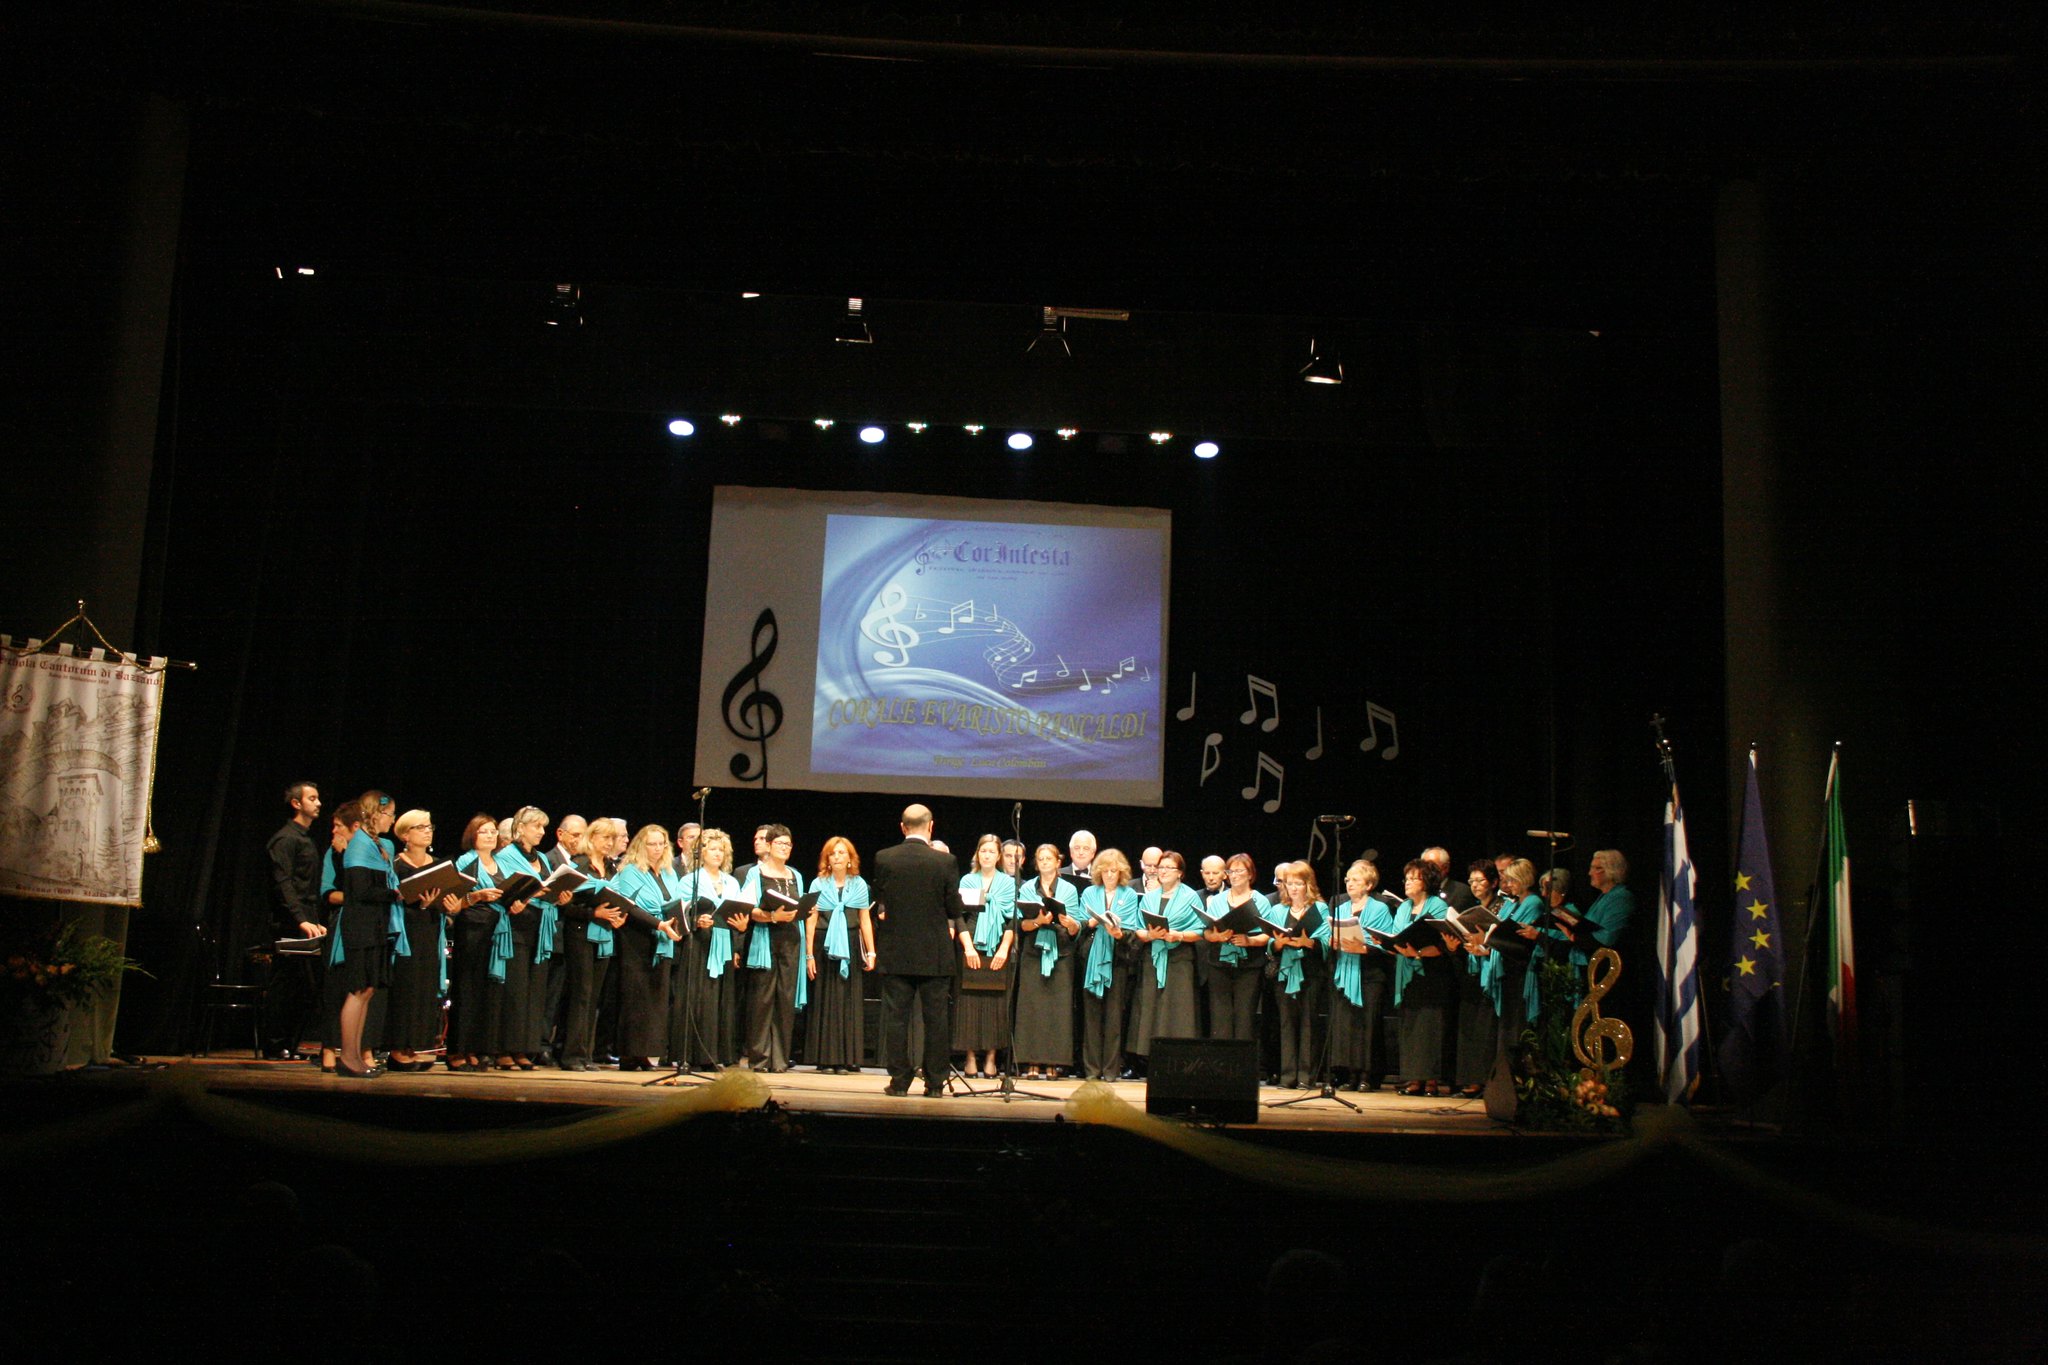 Corinfesta 2014. Teatro Fanin. S. Giovanni Persiceto 013 - Gran Concerto CorinFesta